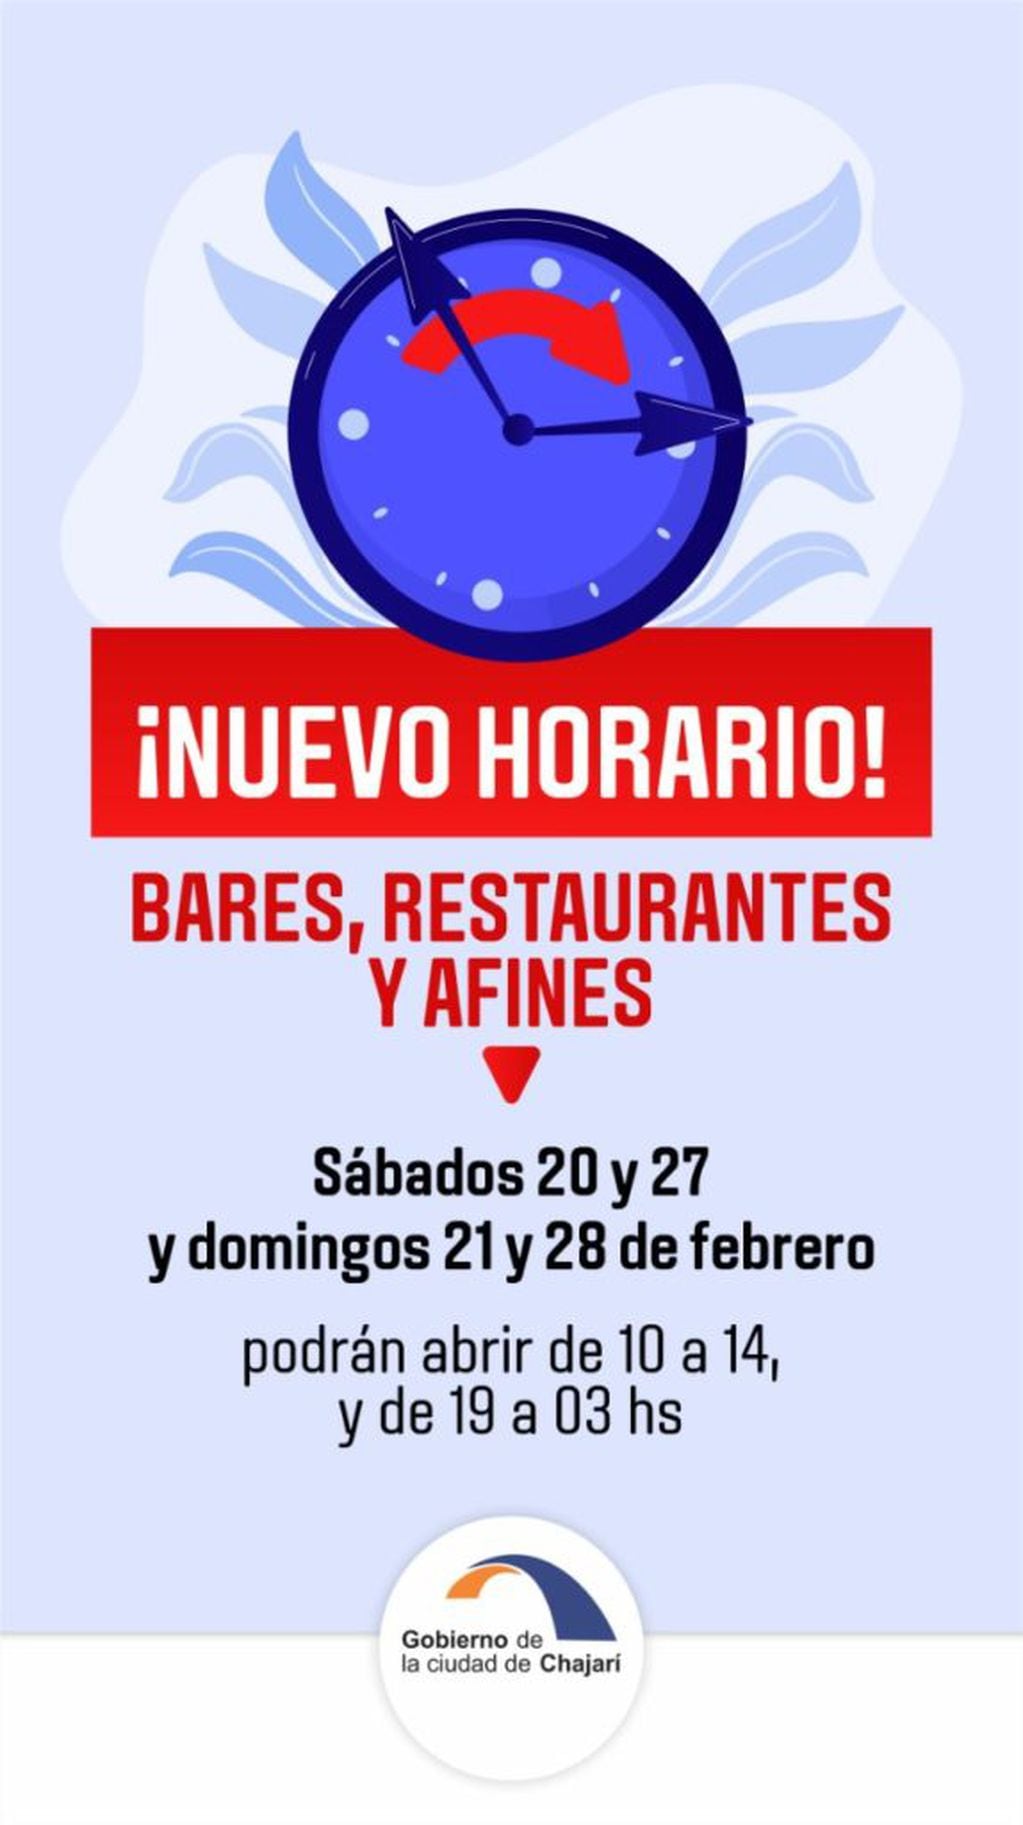 Nuevos horarios de atención para bares y restaurantes de Chajarí